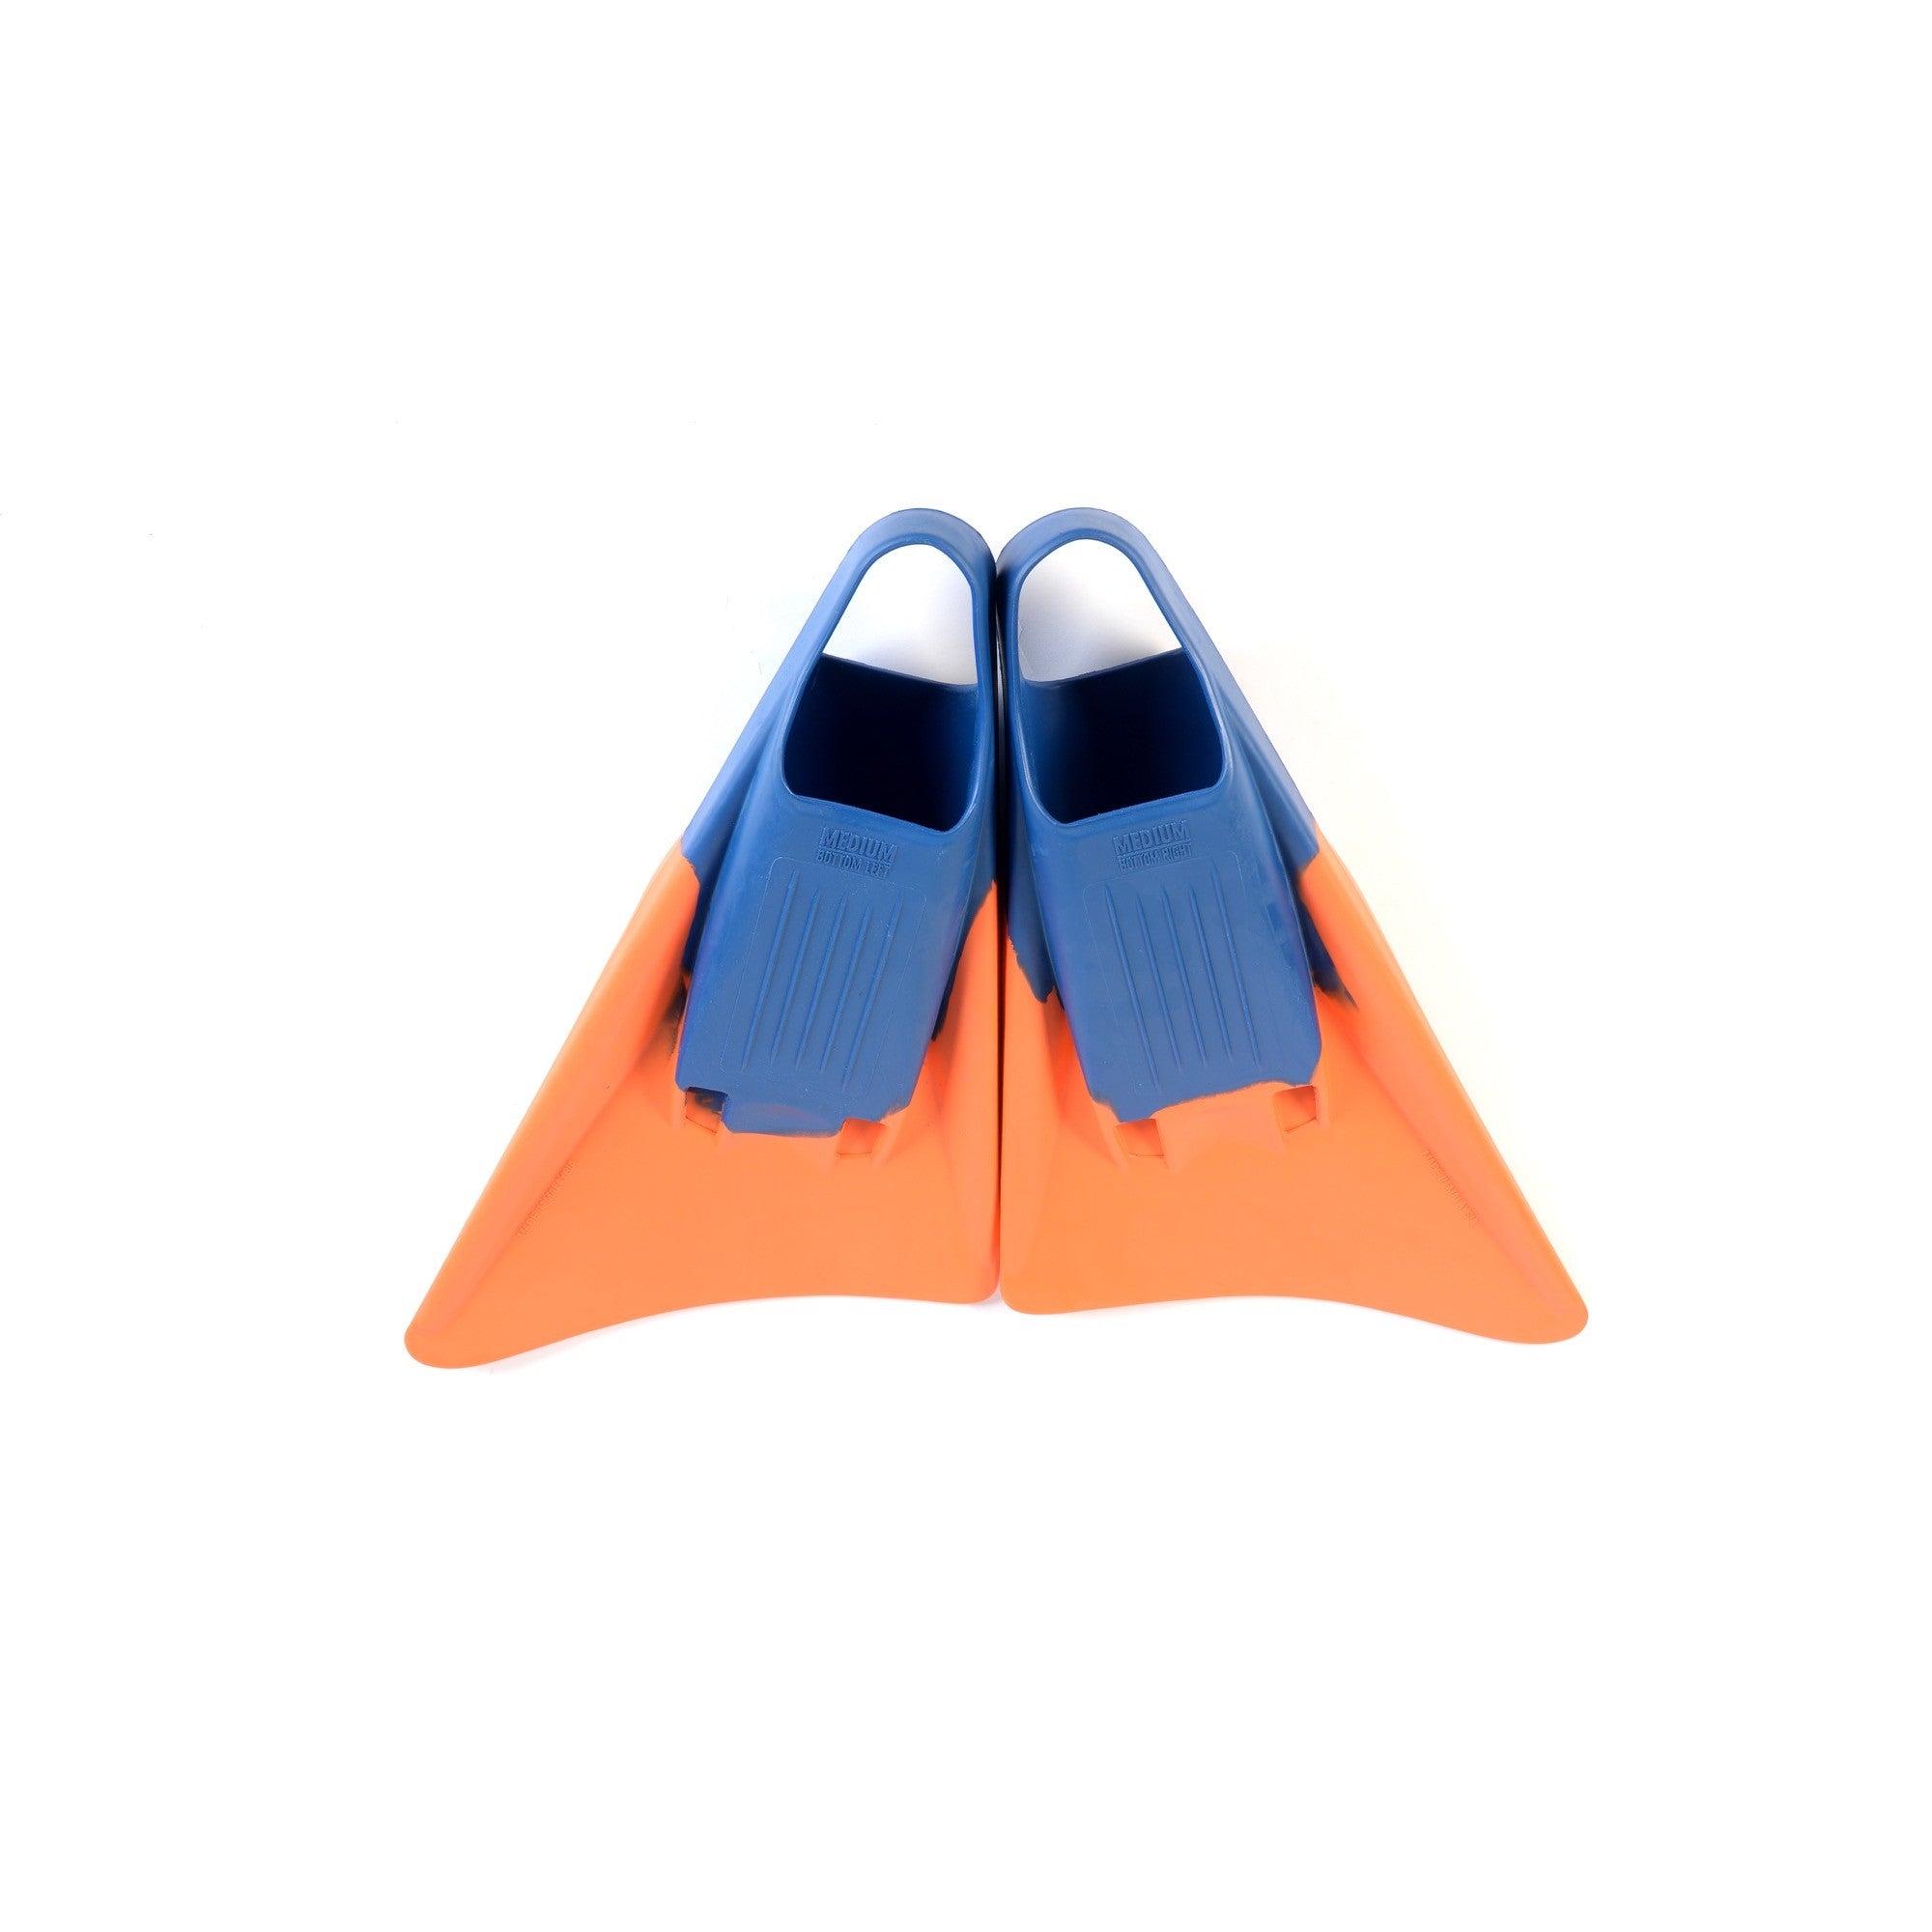 RIP SF300 Fins - Bodysurf and Bodyboard Fins - Blue / Orange